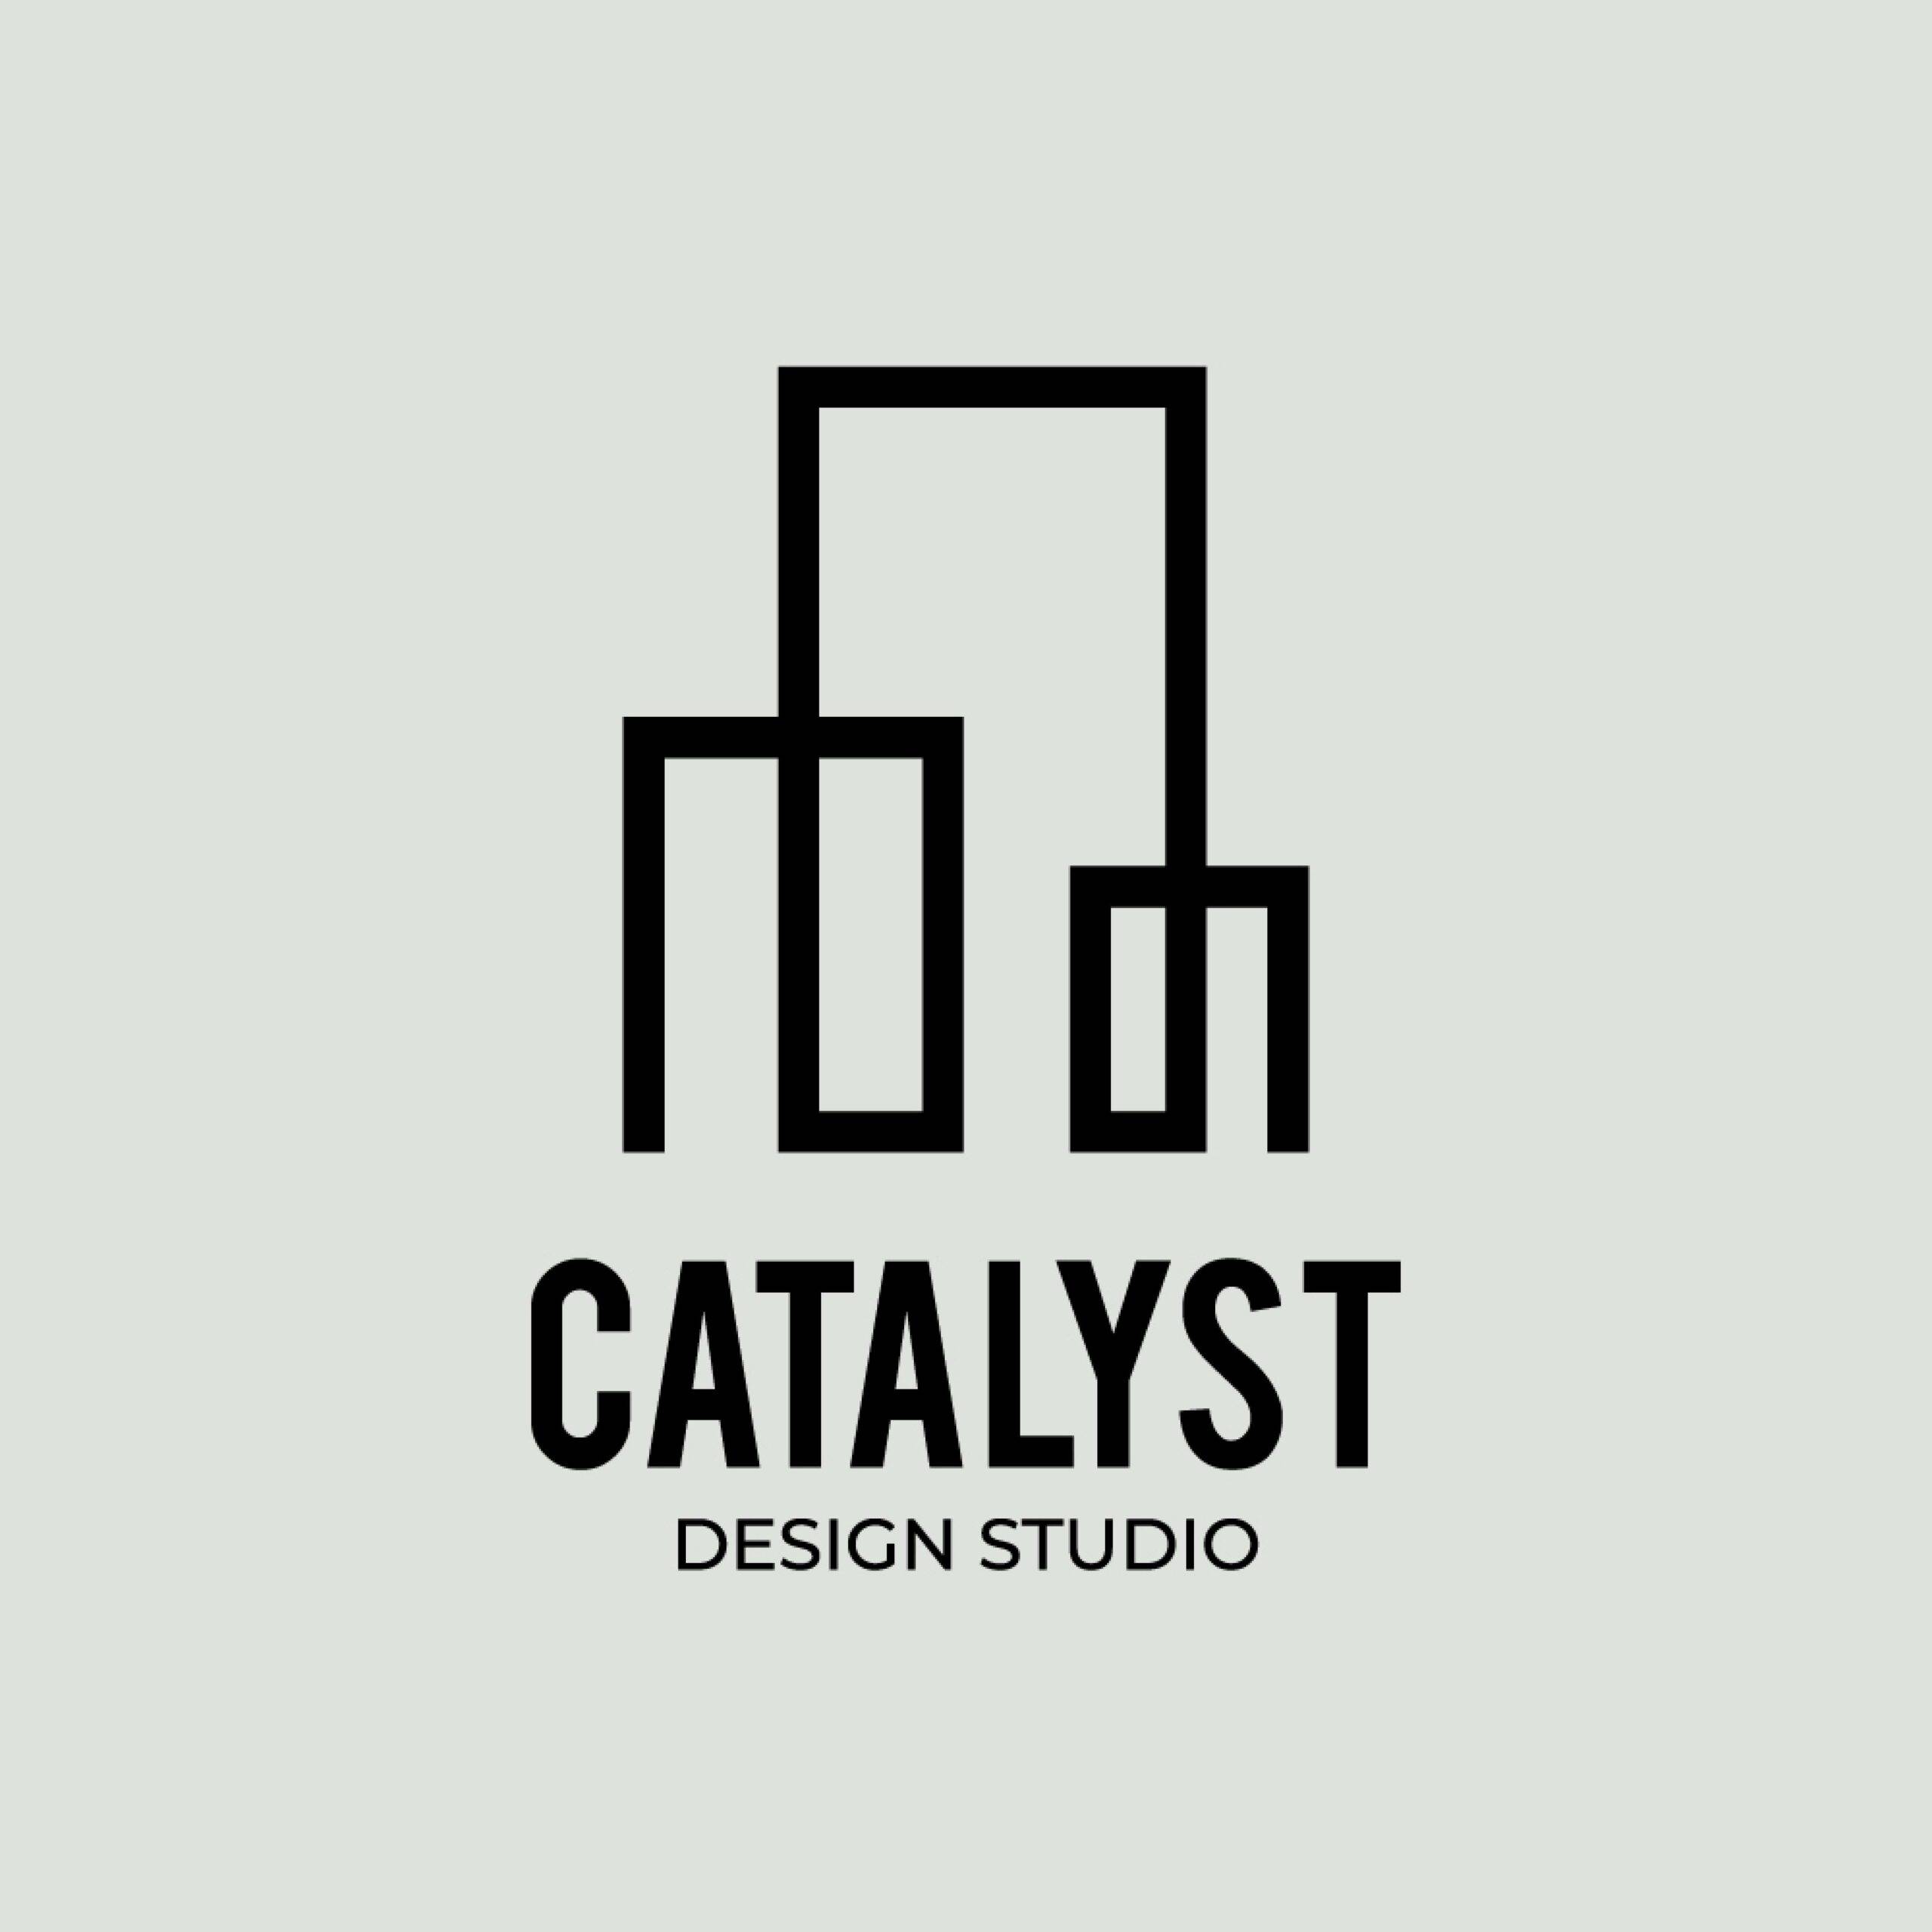 Catalyst architecture logo design studio